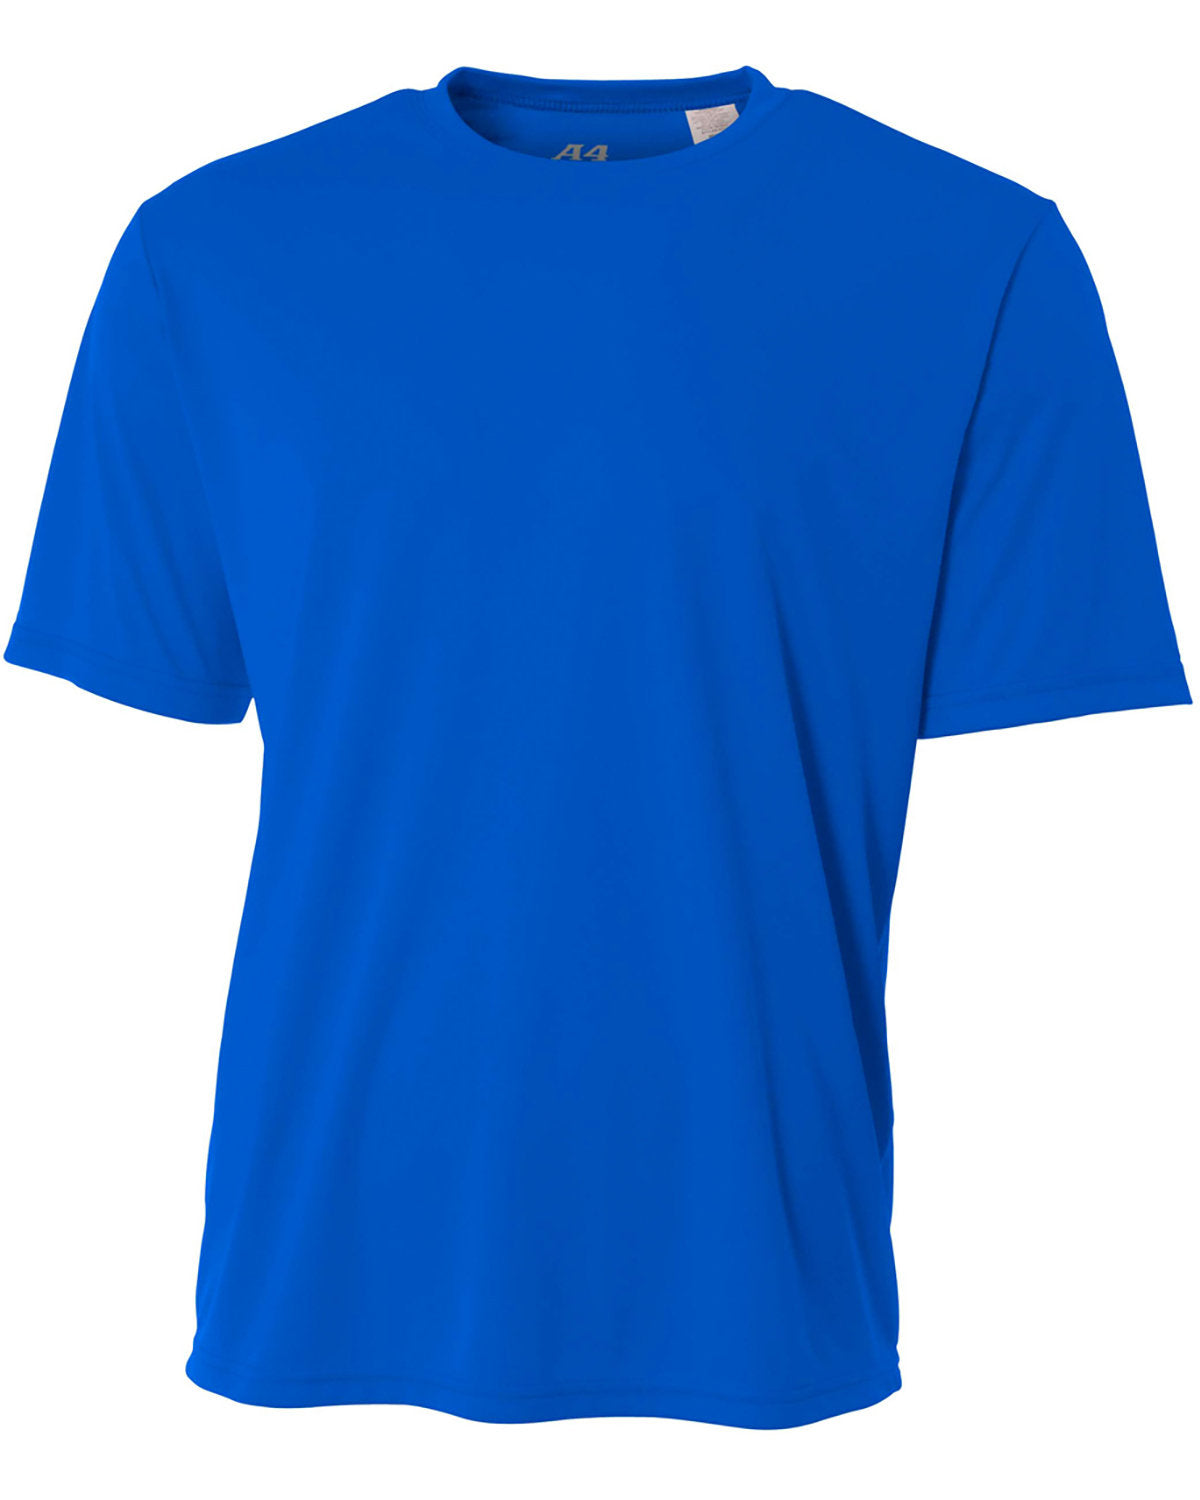 A4 NB3142 Youth T-Shirt – Shirts